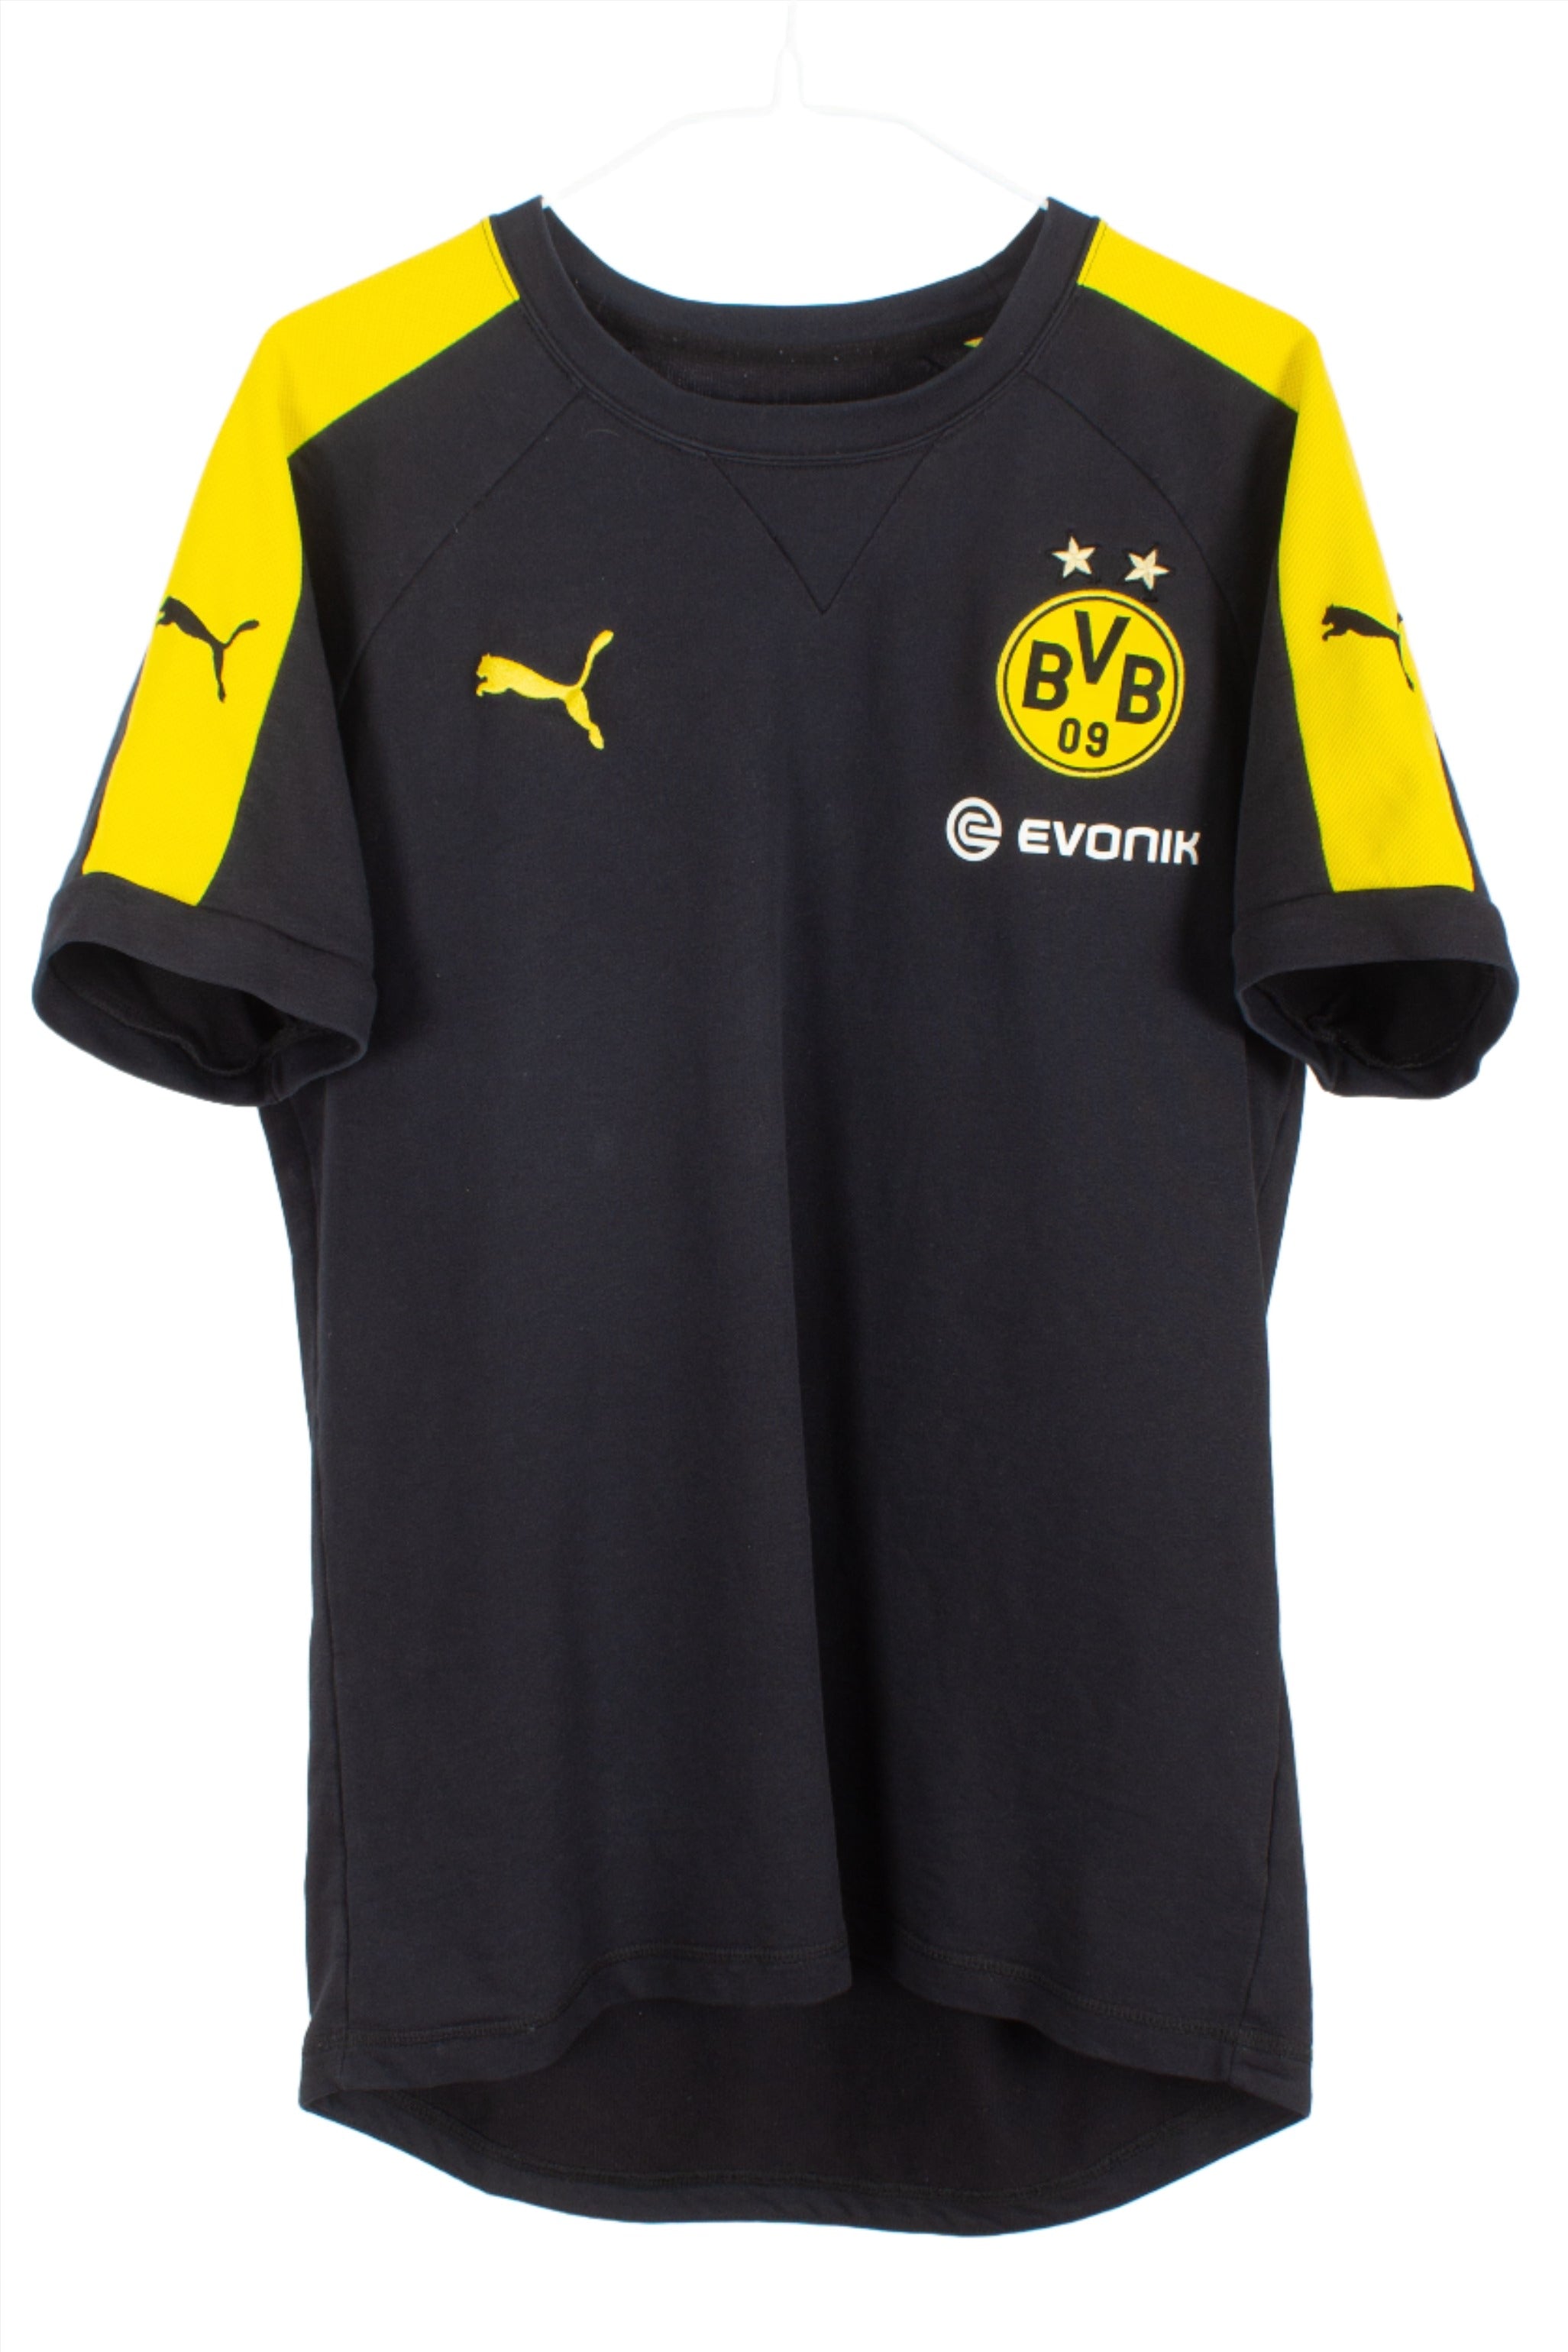 Borussia Dortmund 2015/16 Training Shirt (L)